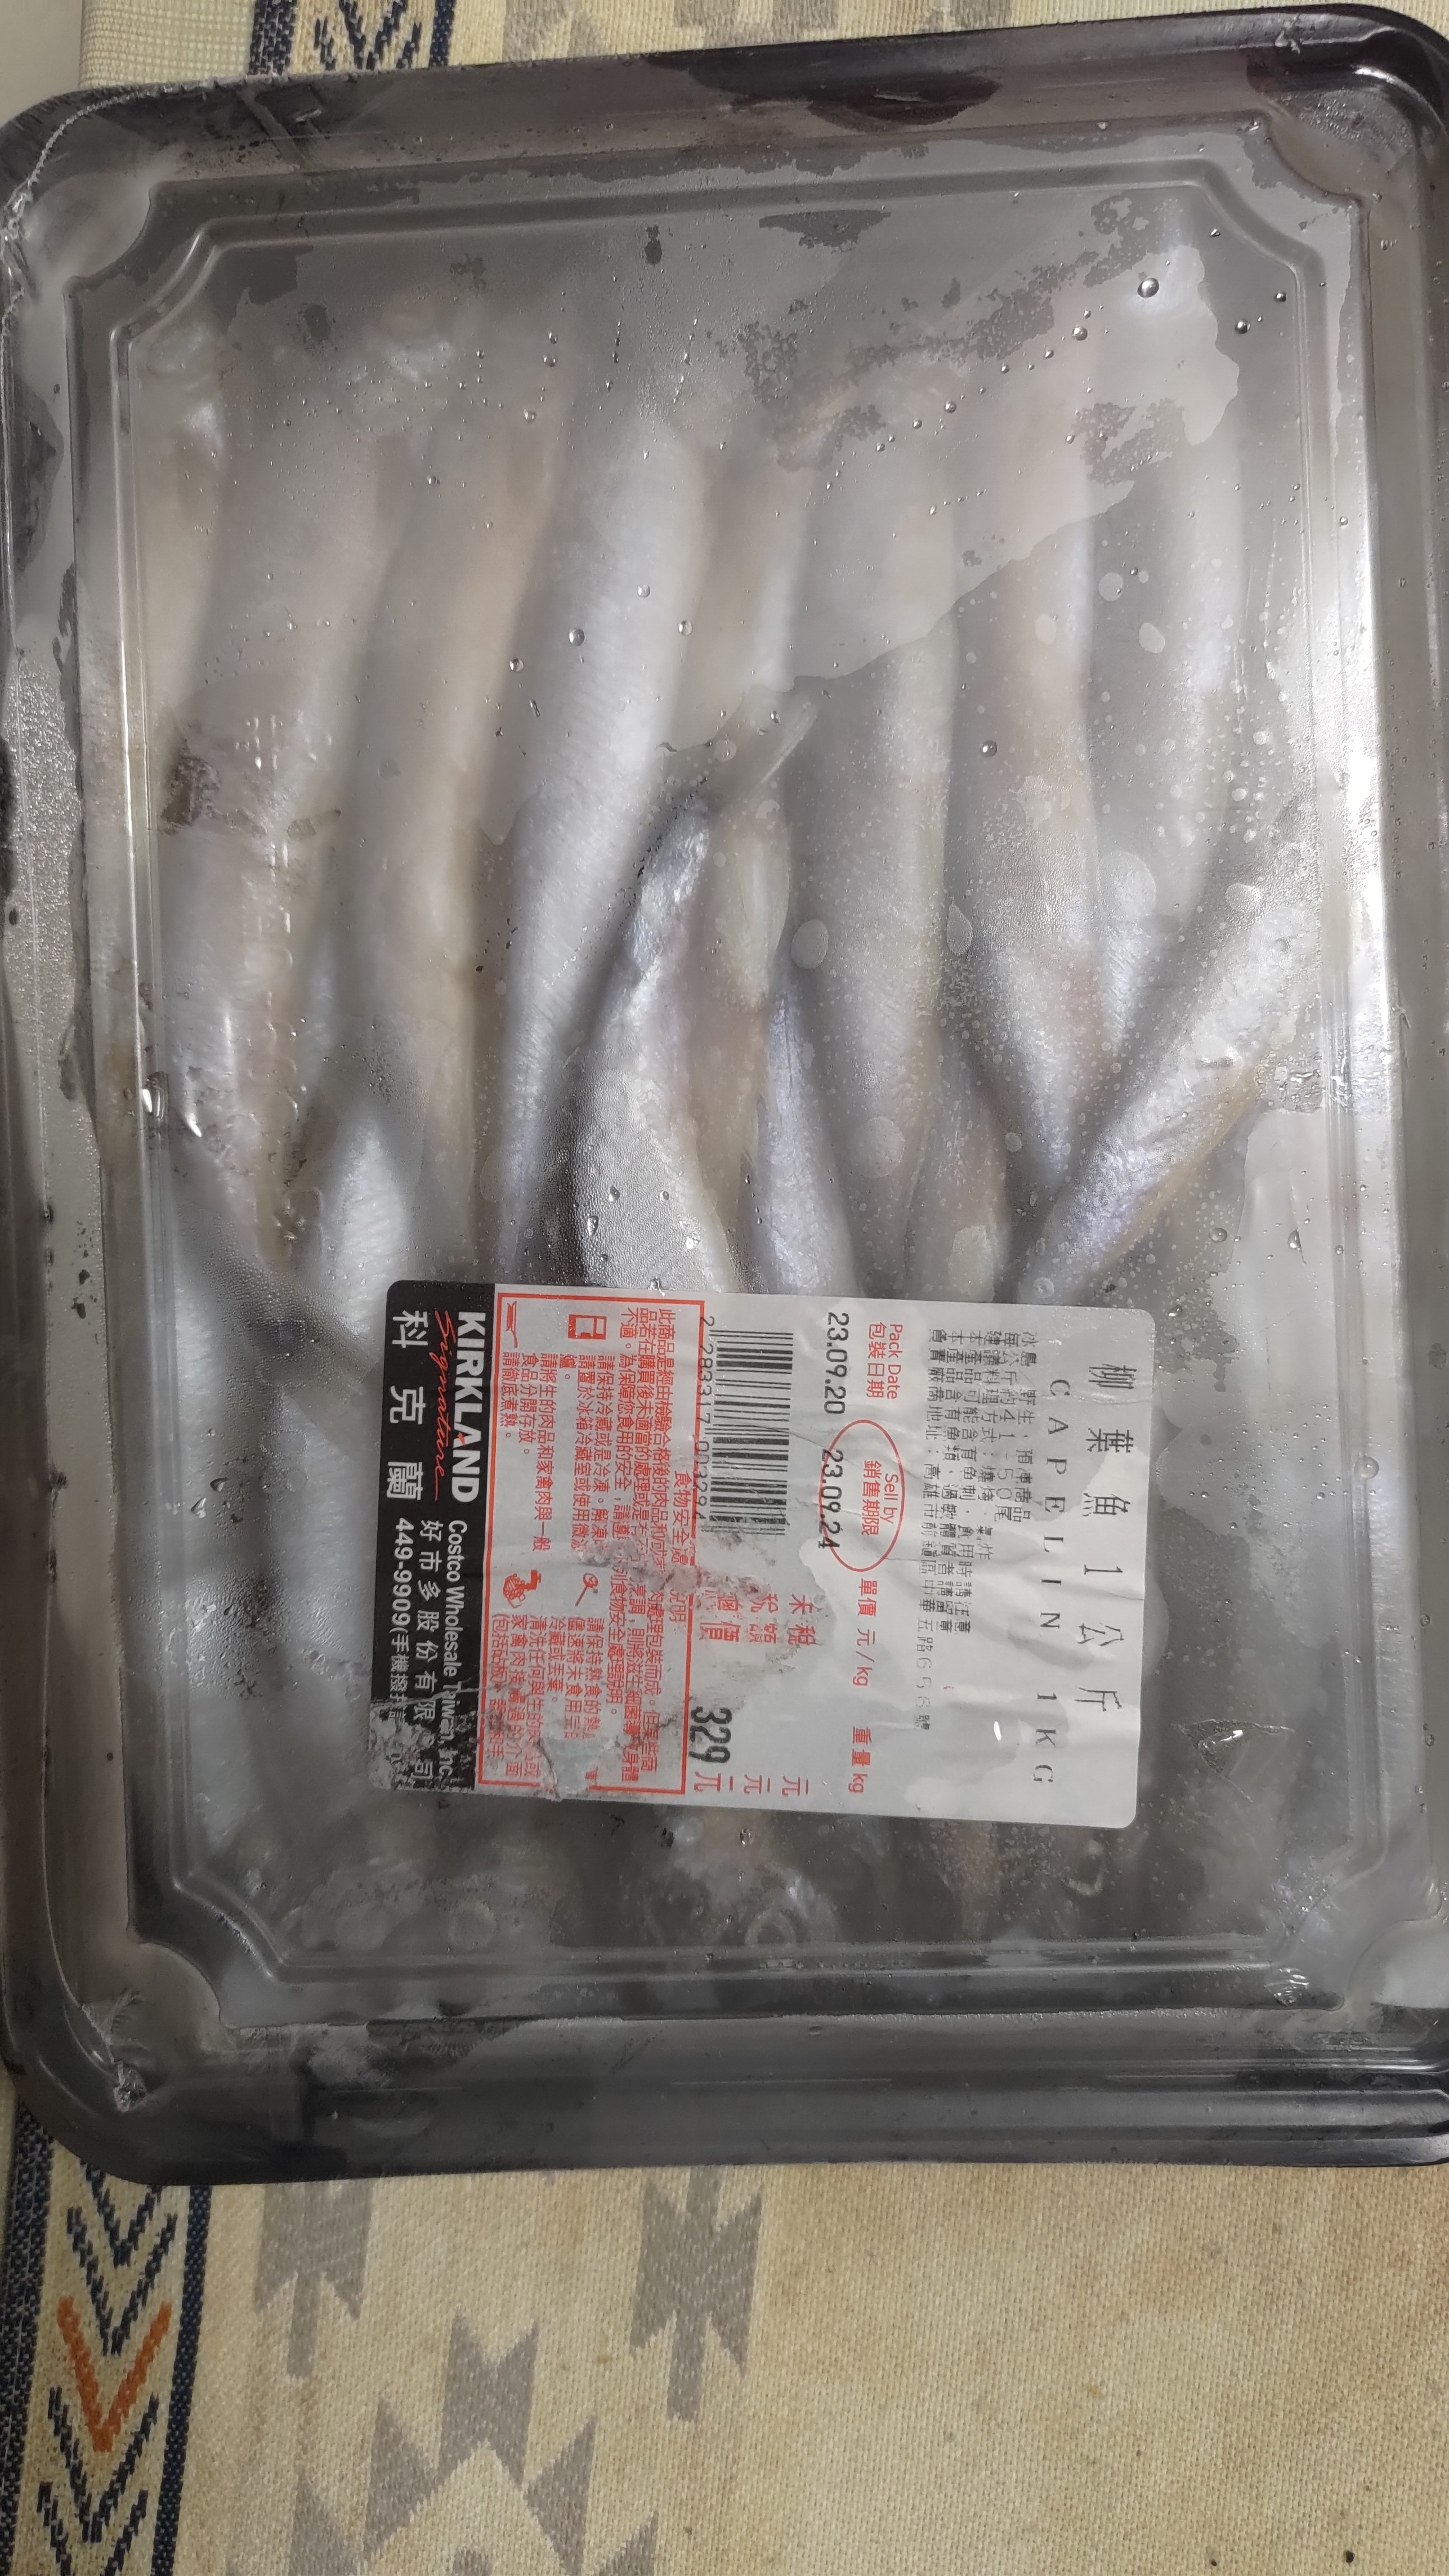 [問題] 冷凍柳葉魚如何分開?